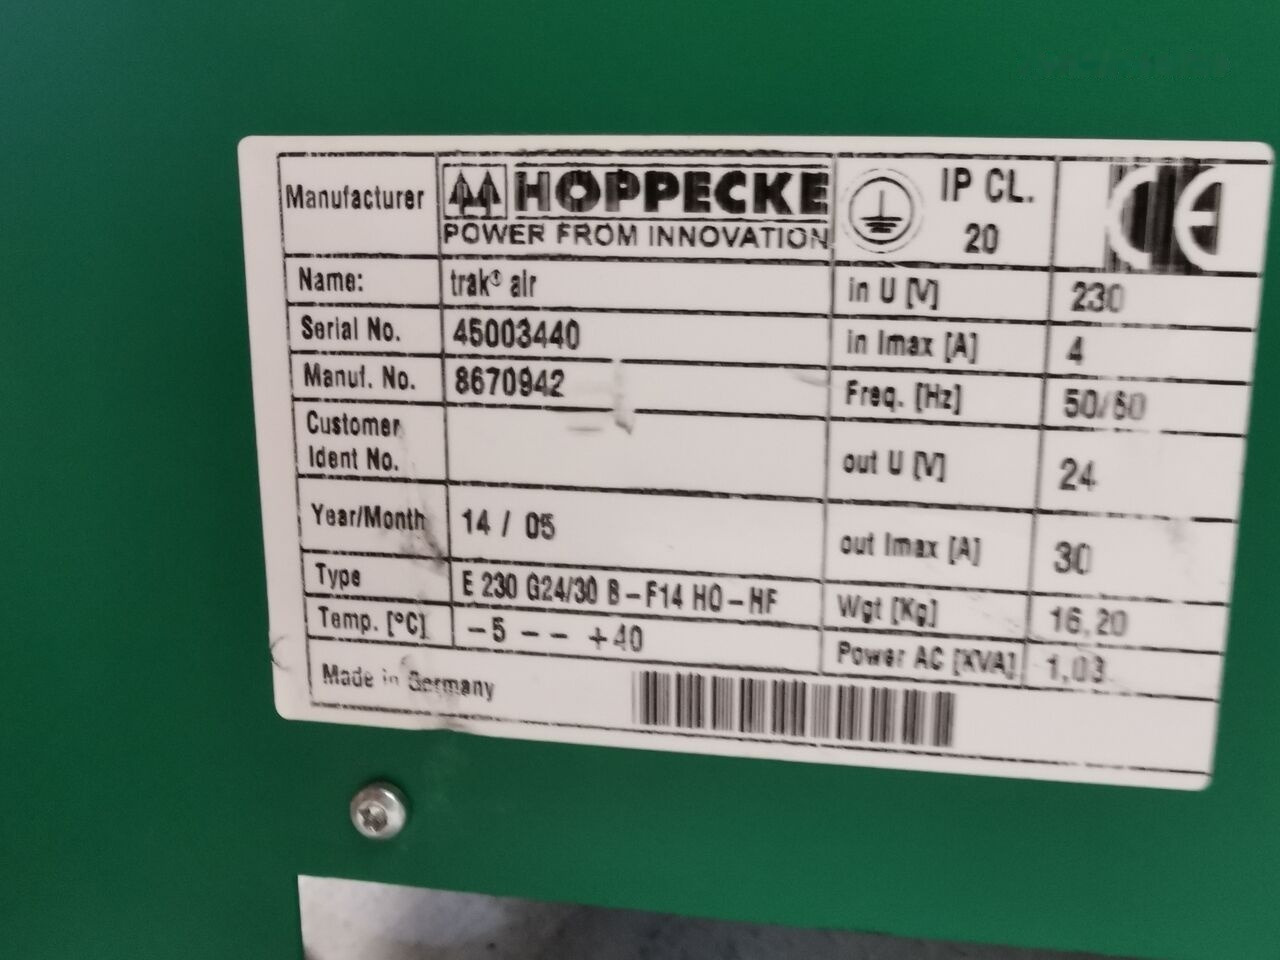 Acumulador para Carretilla elevadora Hoppecke E230 G24/30  for Hoppecke E 230 G24/30 B- F14 electric forklift: foto 3